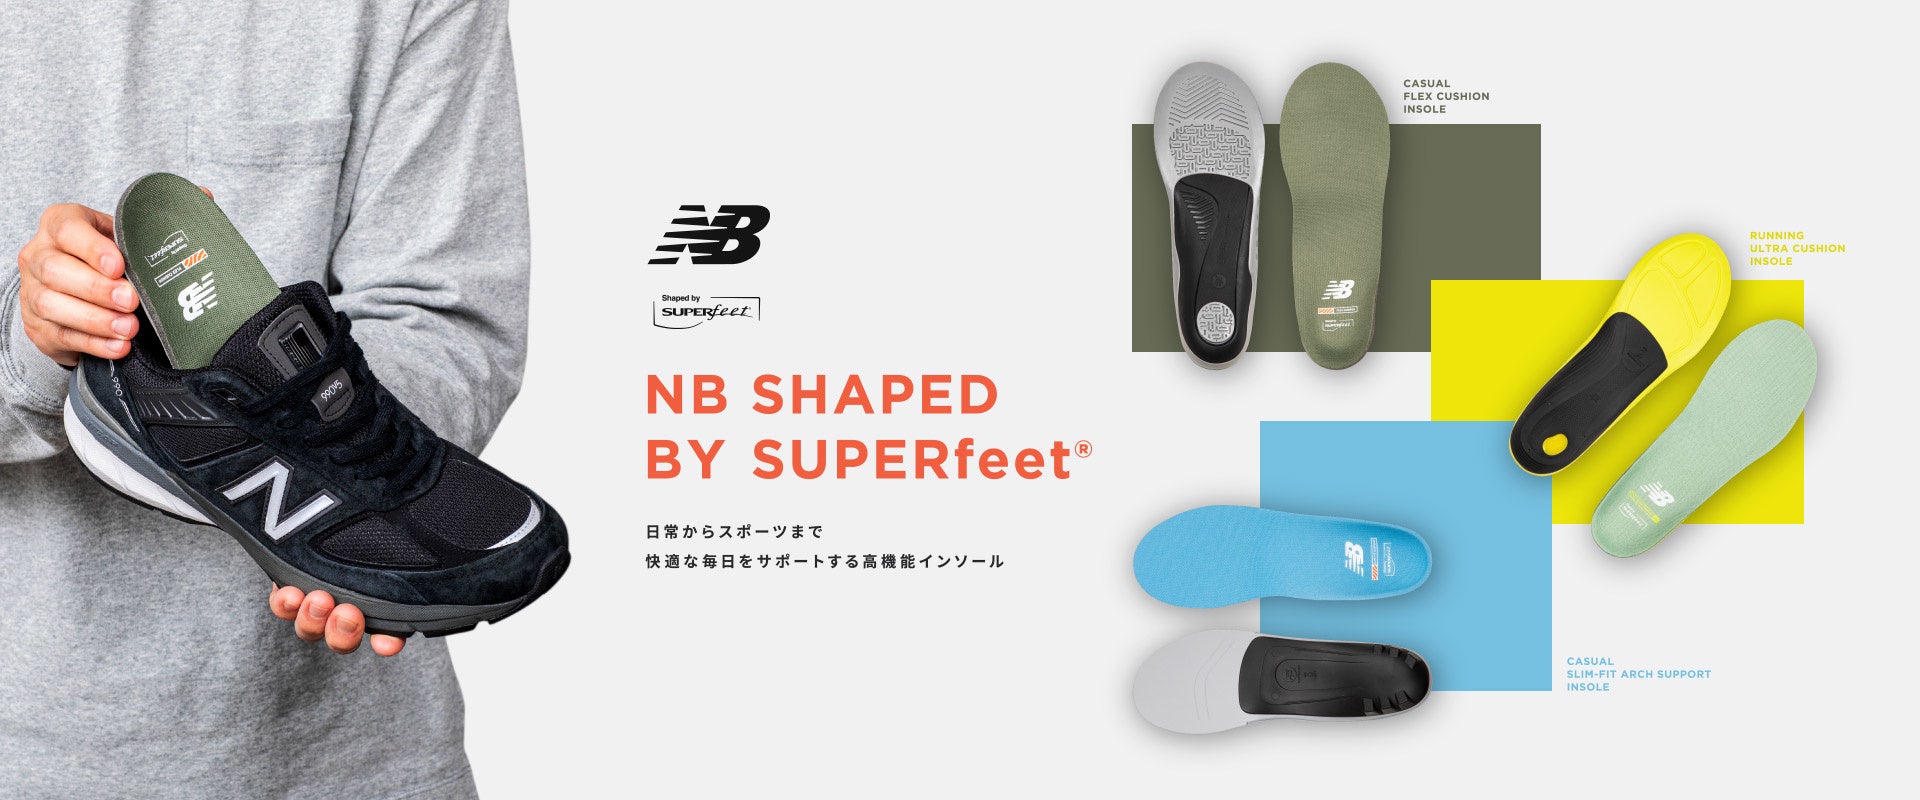 ニューバランス　日常からスポーツまで 快適な毎日をサポートする 高機能インソール 「NB SHAPED BY SUPERfeet®」登場